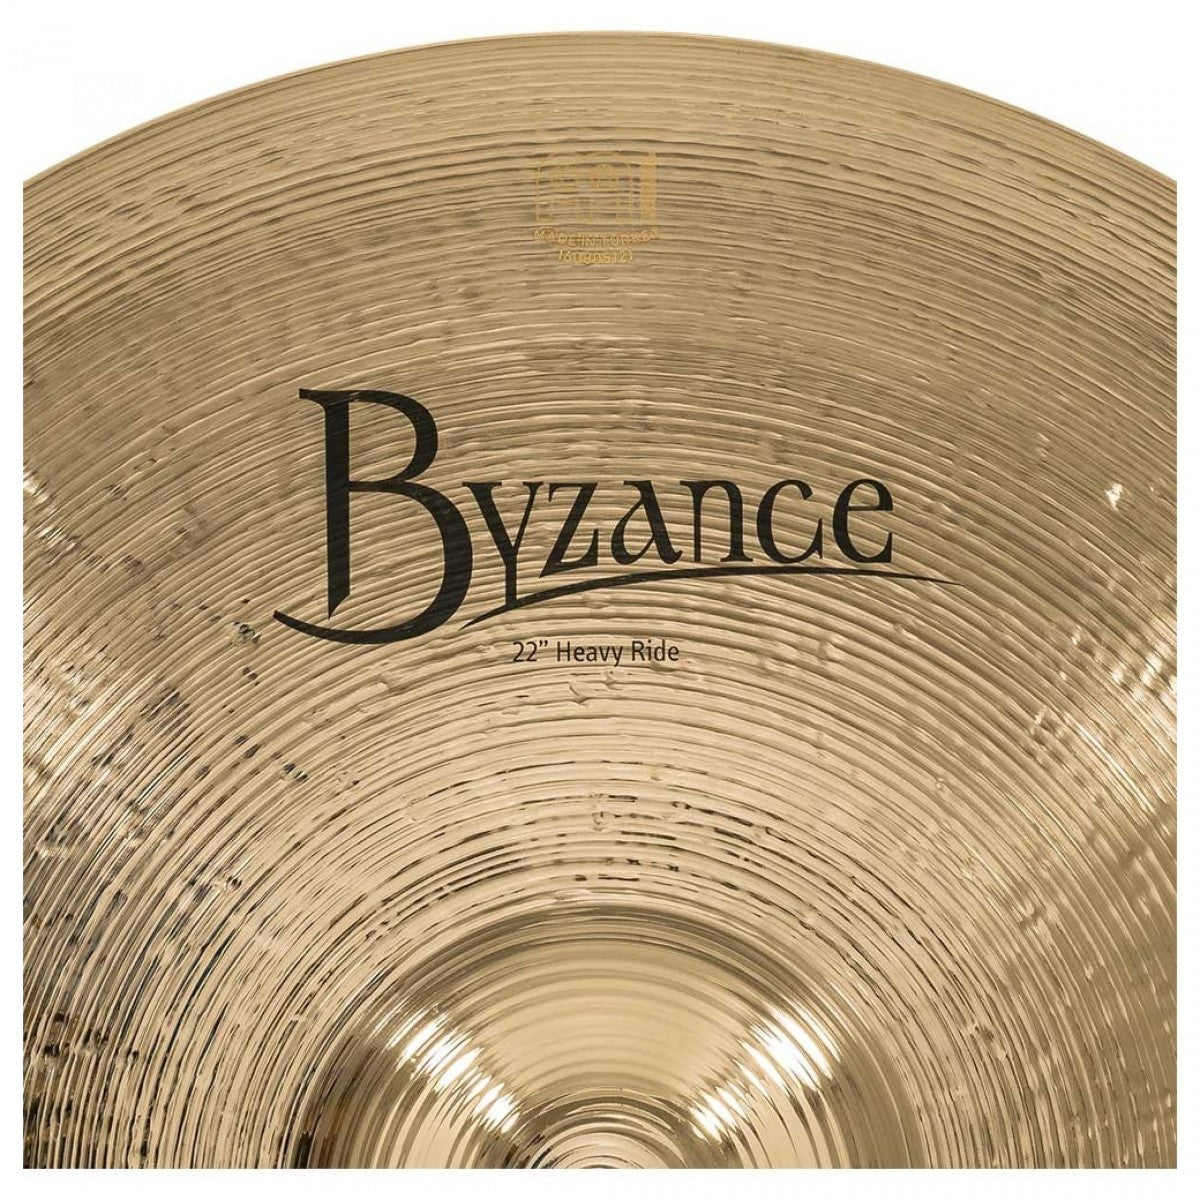 Cymbal Meinl Byzance Brilliant 22" Heavy Ride - B22HR-B - Việt Music